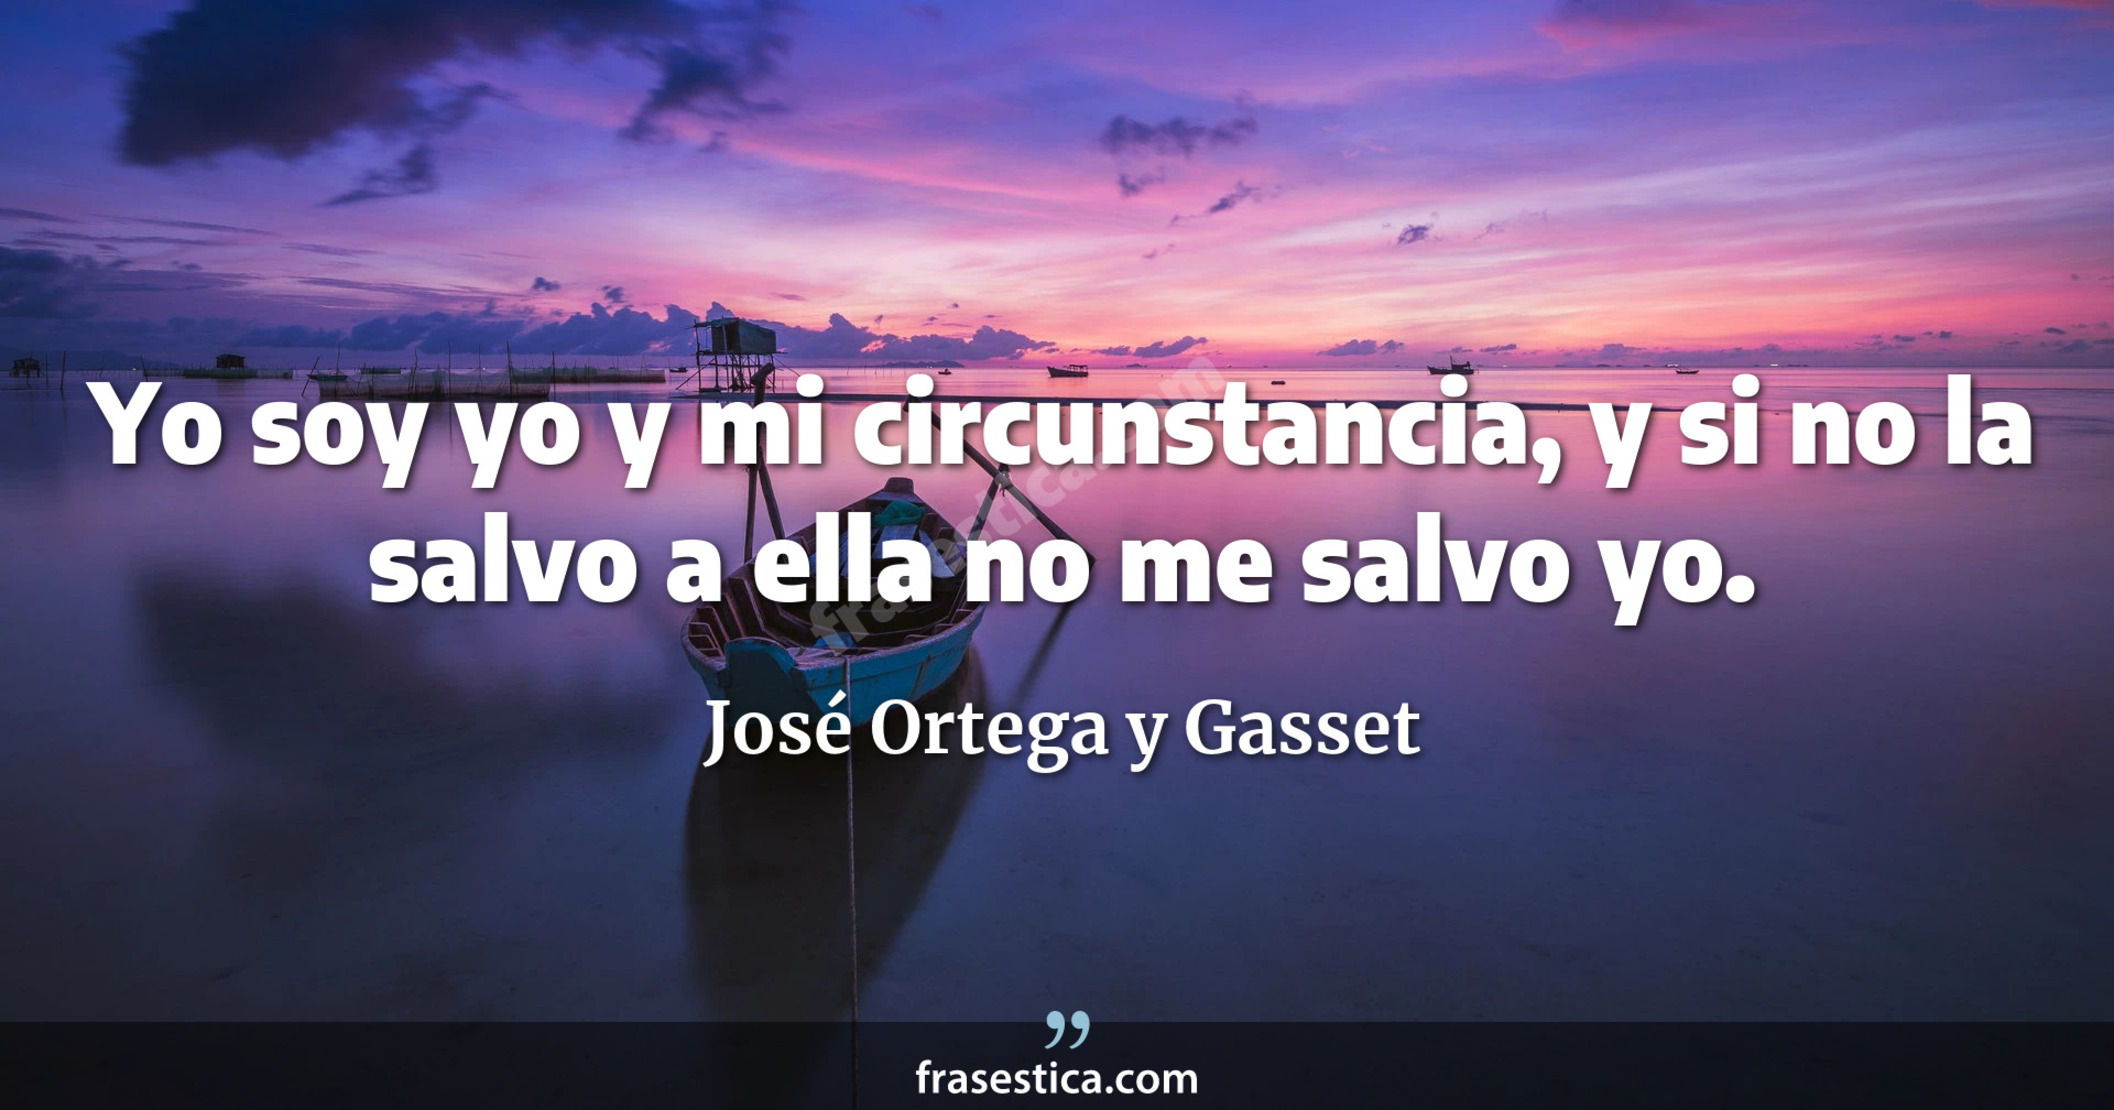 Yo soy yo y mi circunstancia, y si no la salvo a ella no me salvo yo. - José Ortega y Gasset